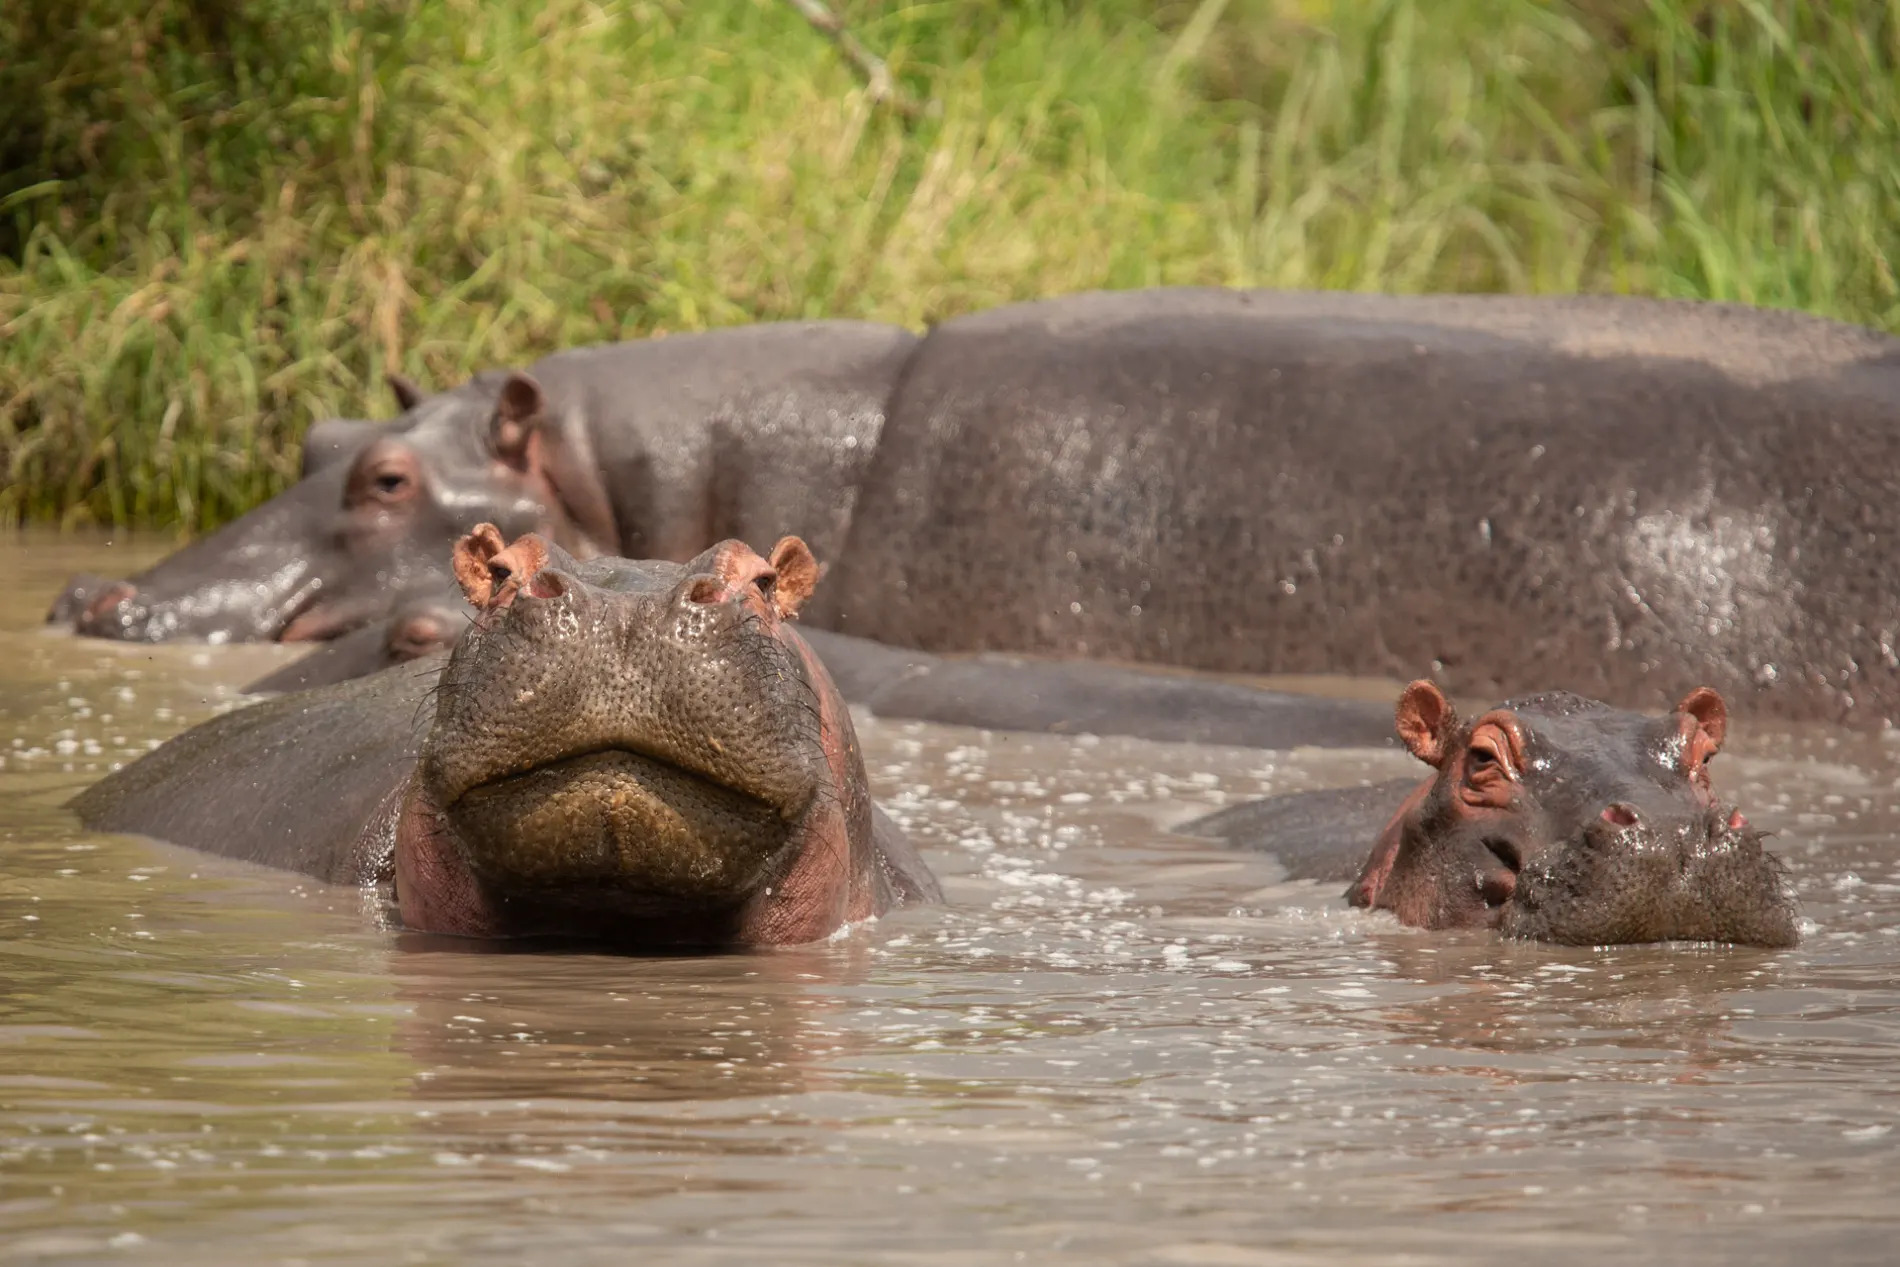 Hippo face